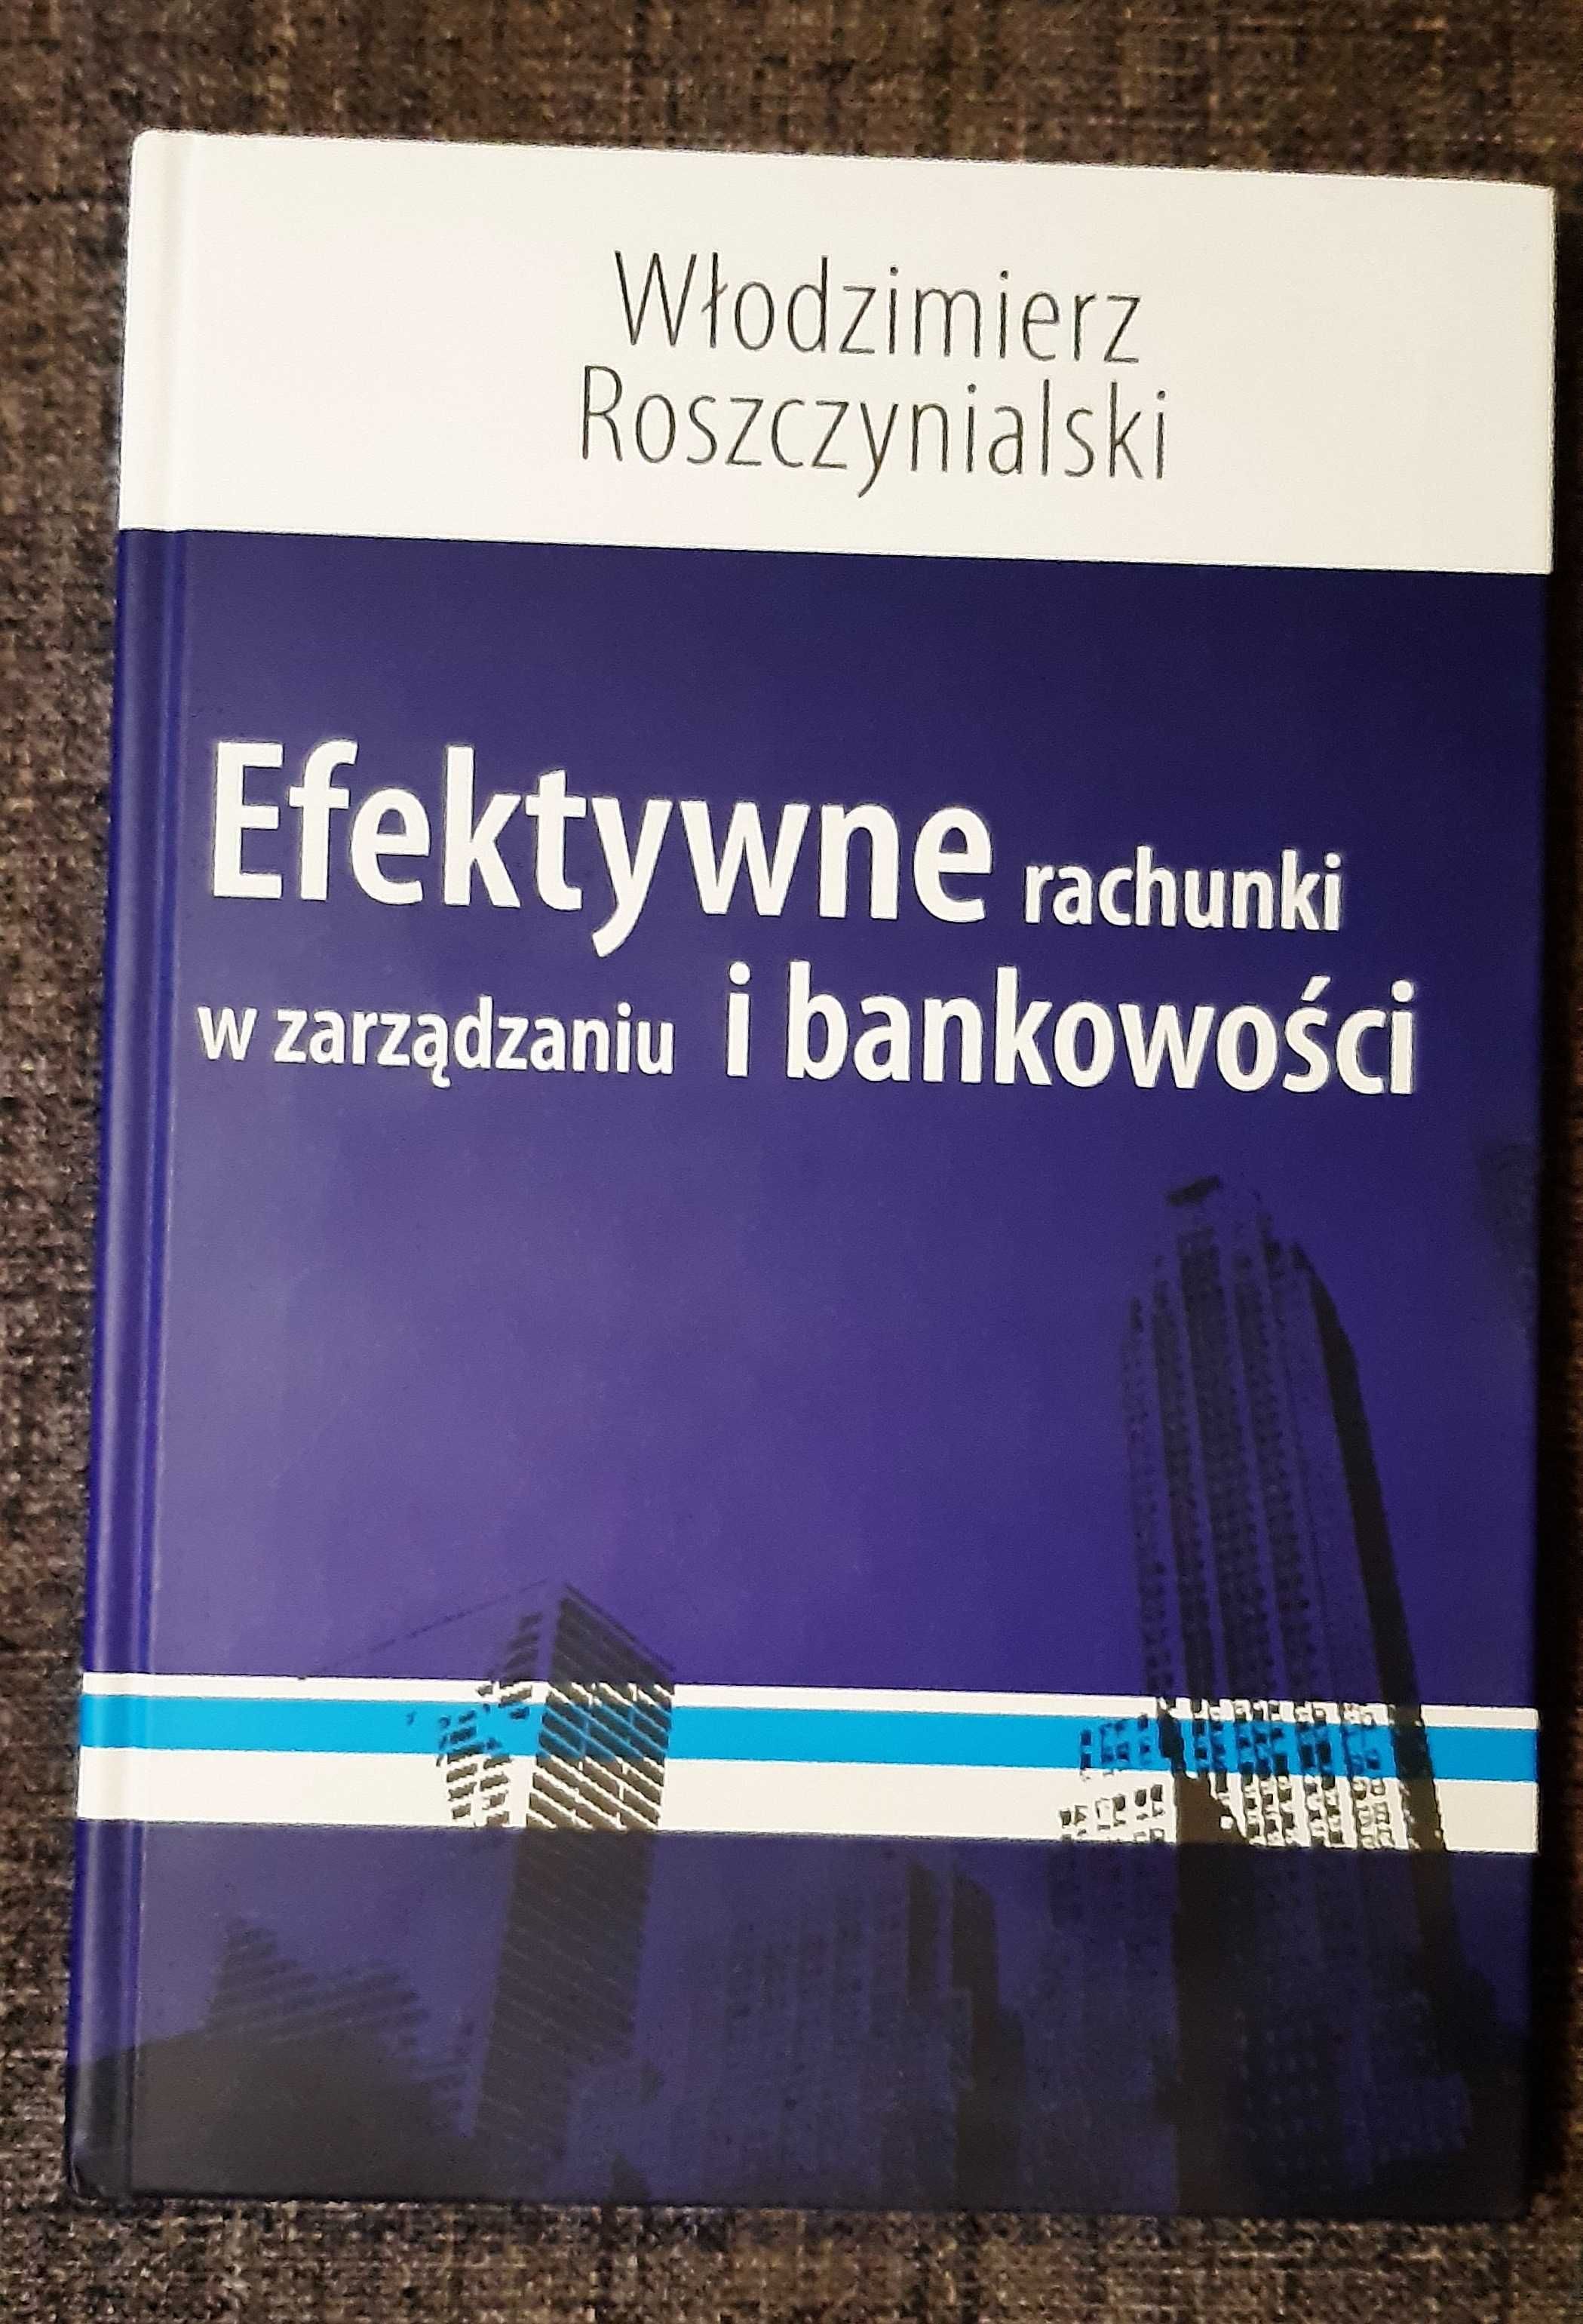 Efektywne rachunki w zarzadzaniu i bankowosci W. Roszczynialski